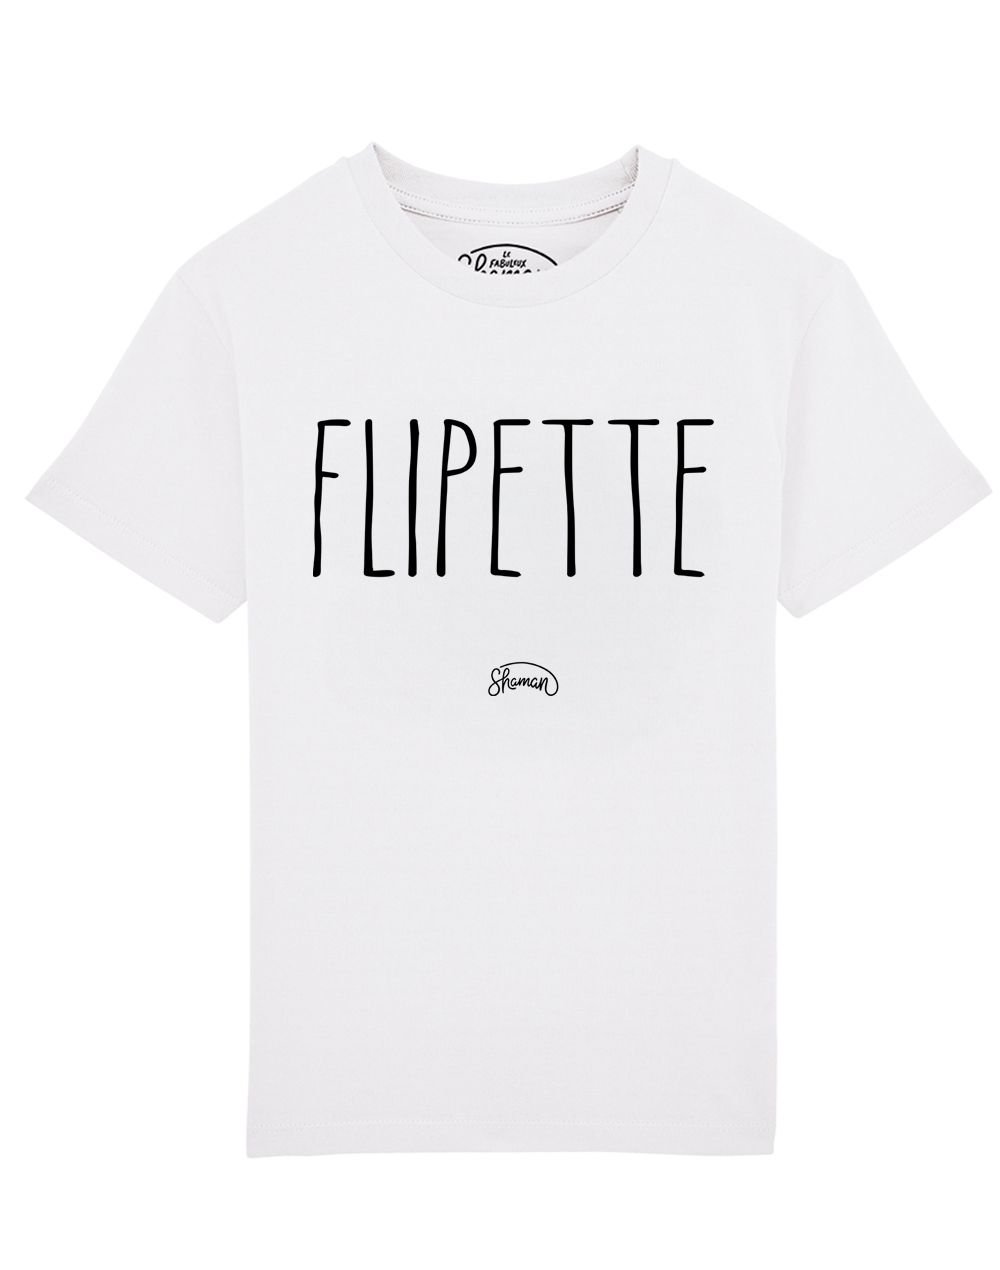 Tee shirt Flipette